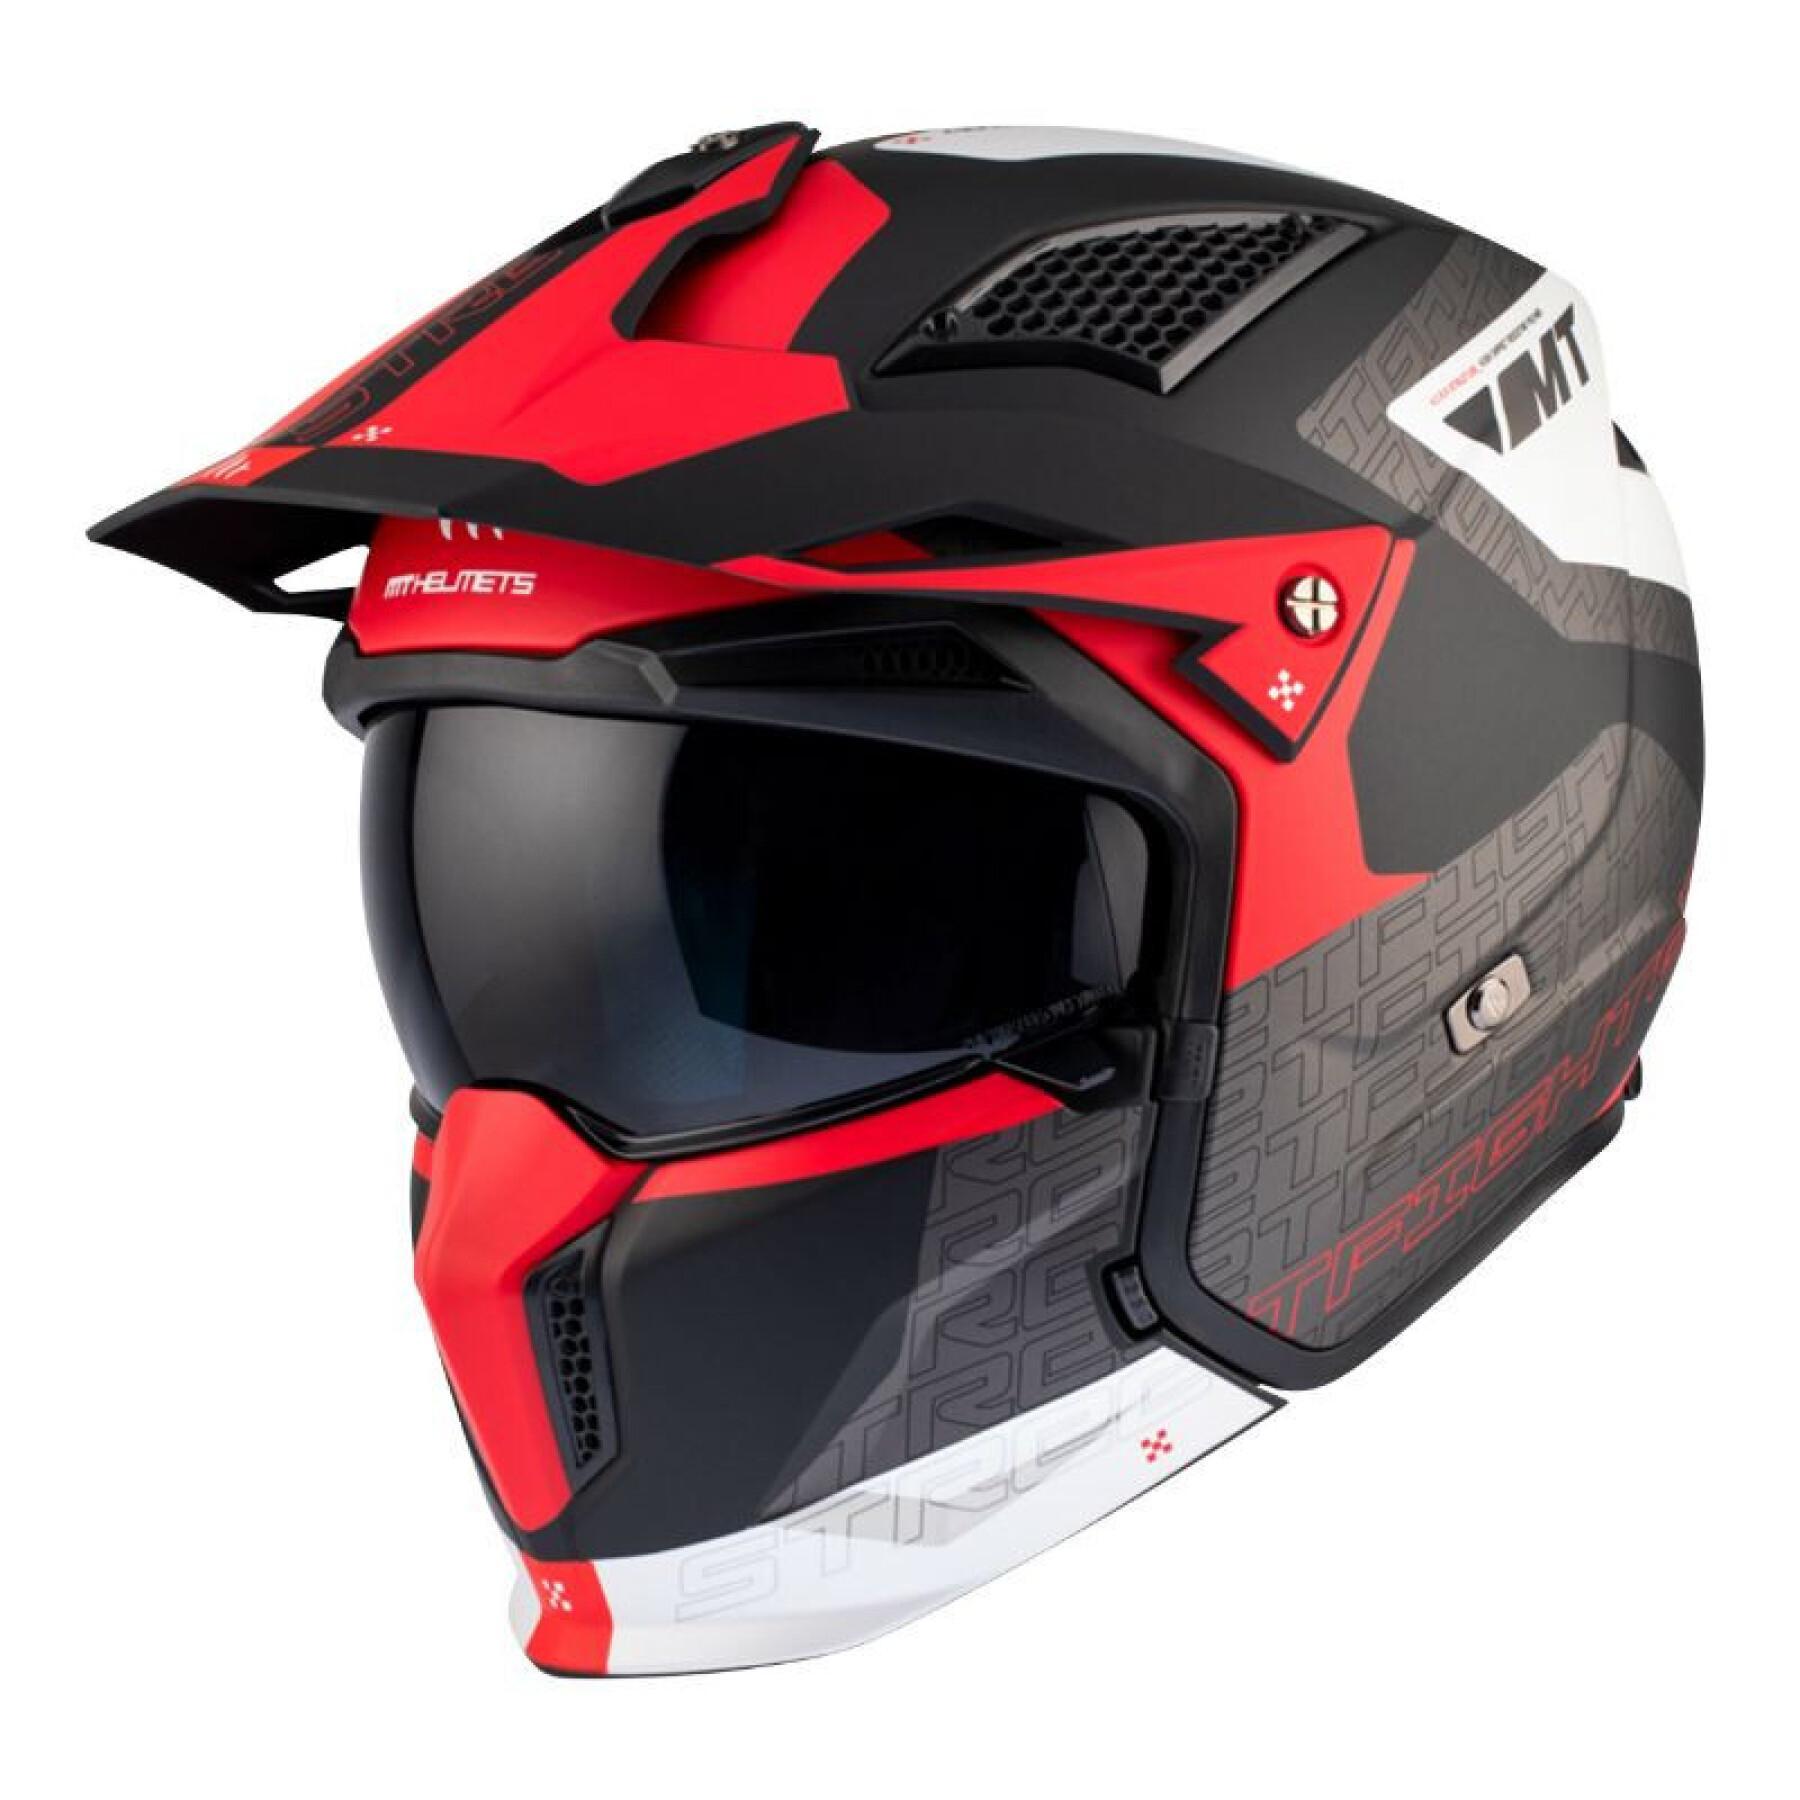 Convertible enkele schild motorcrosshelm met afneembare kinband MT Helmets Streetfighter Sv Totem B15 (Ece 22.06)